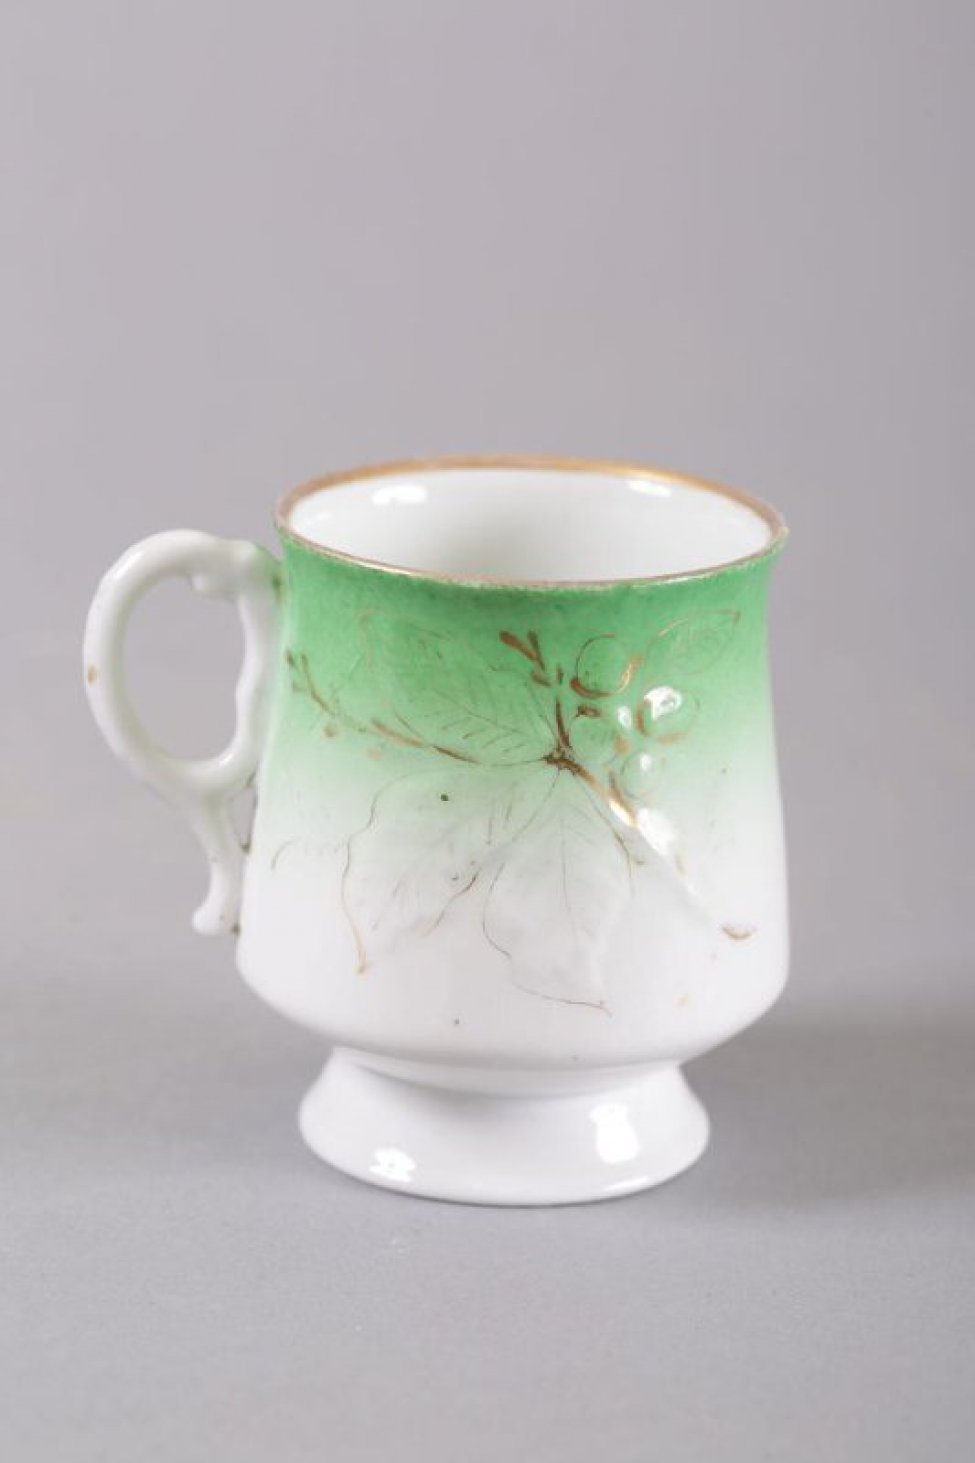 Чашка белая, внизу тулова с постепенным переходом в зеленый цвет. На тулове рельефное изображение виноградной ветки с надглазурной позолотой.